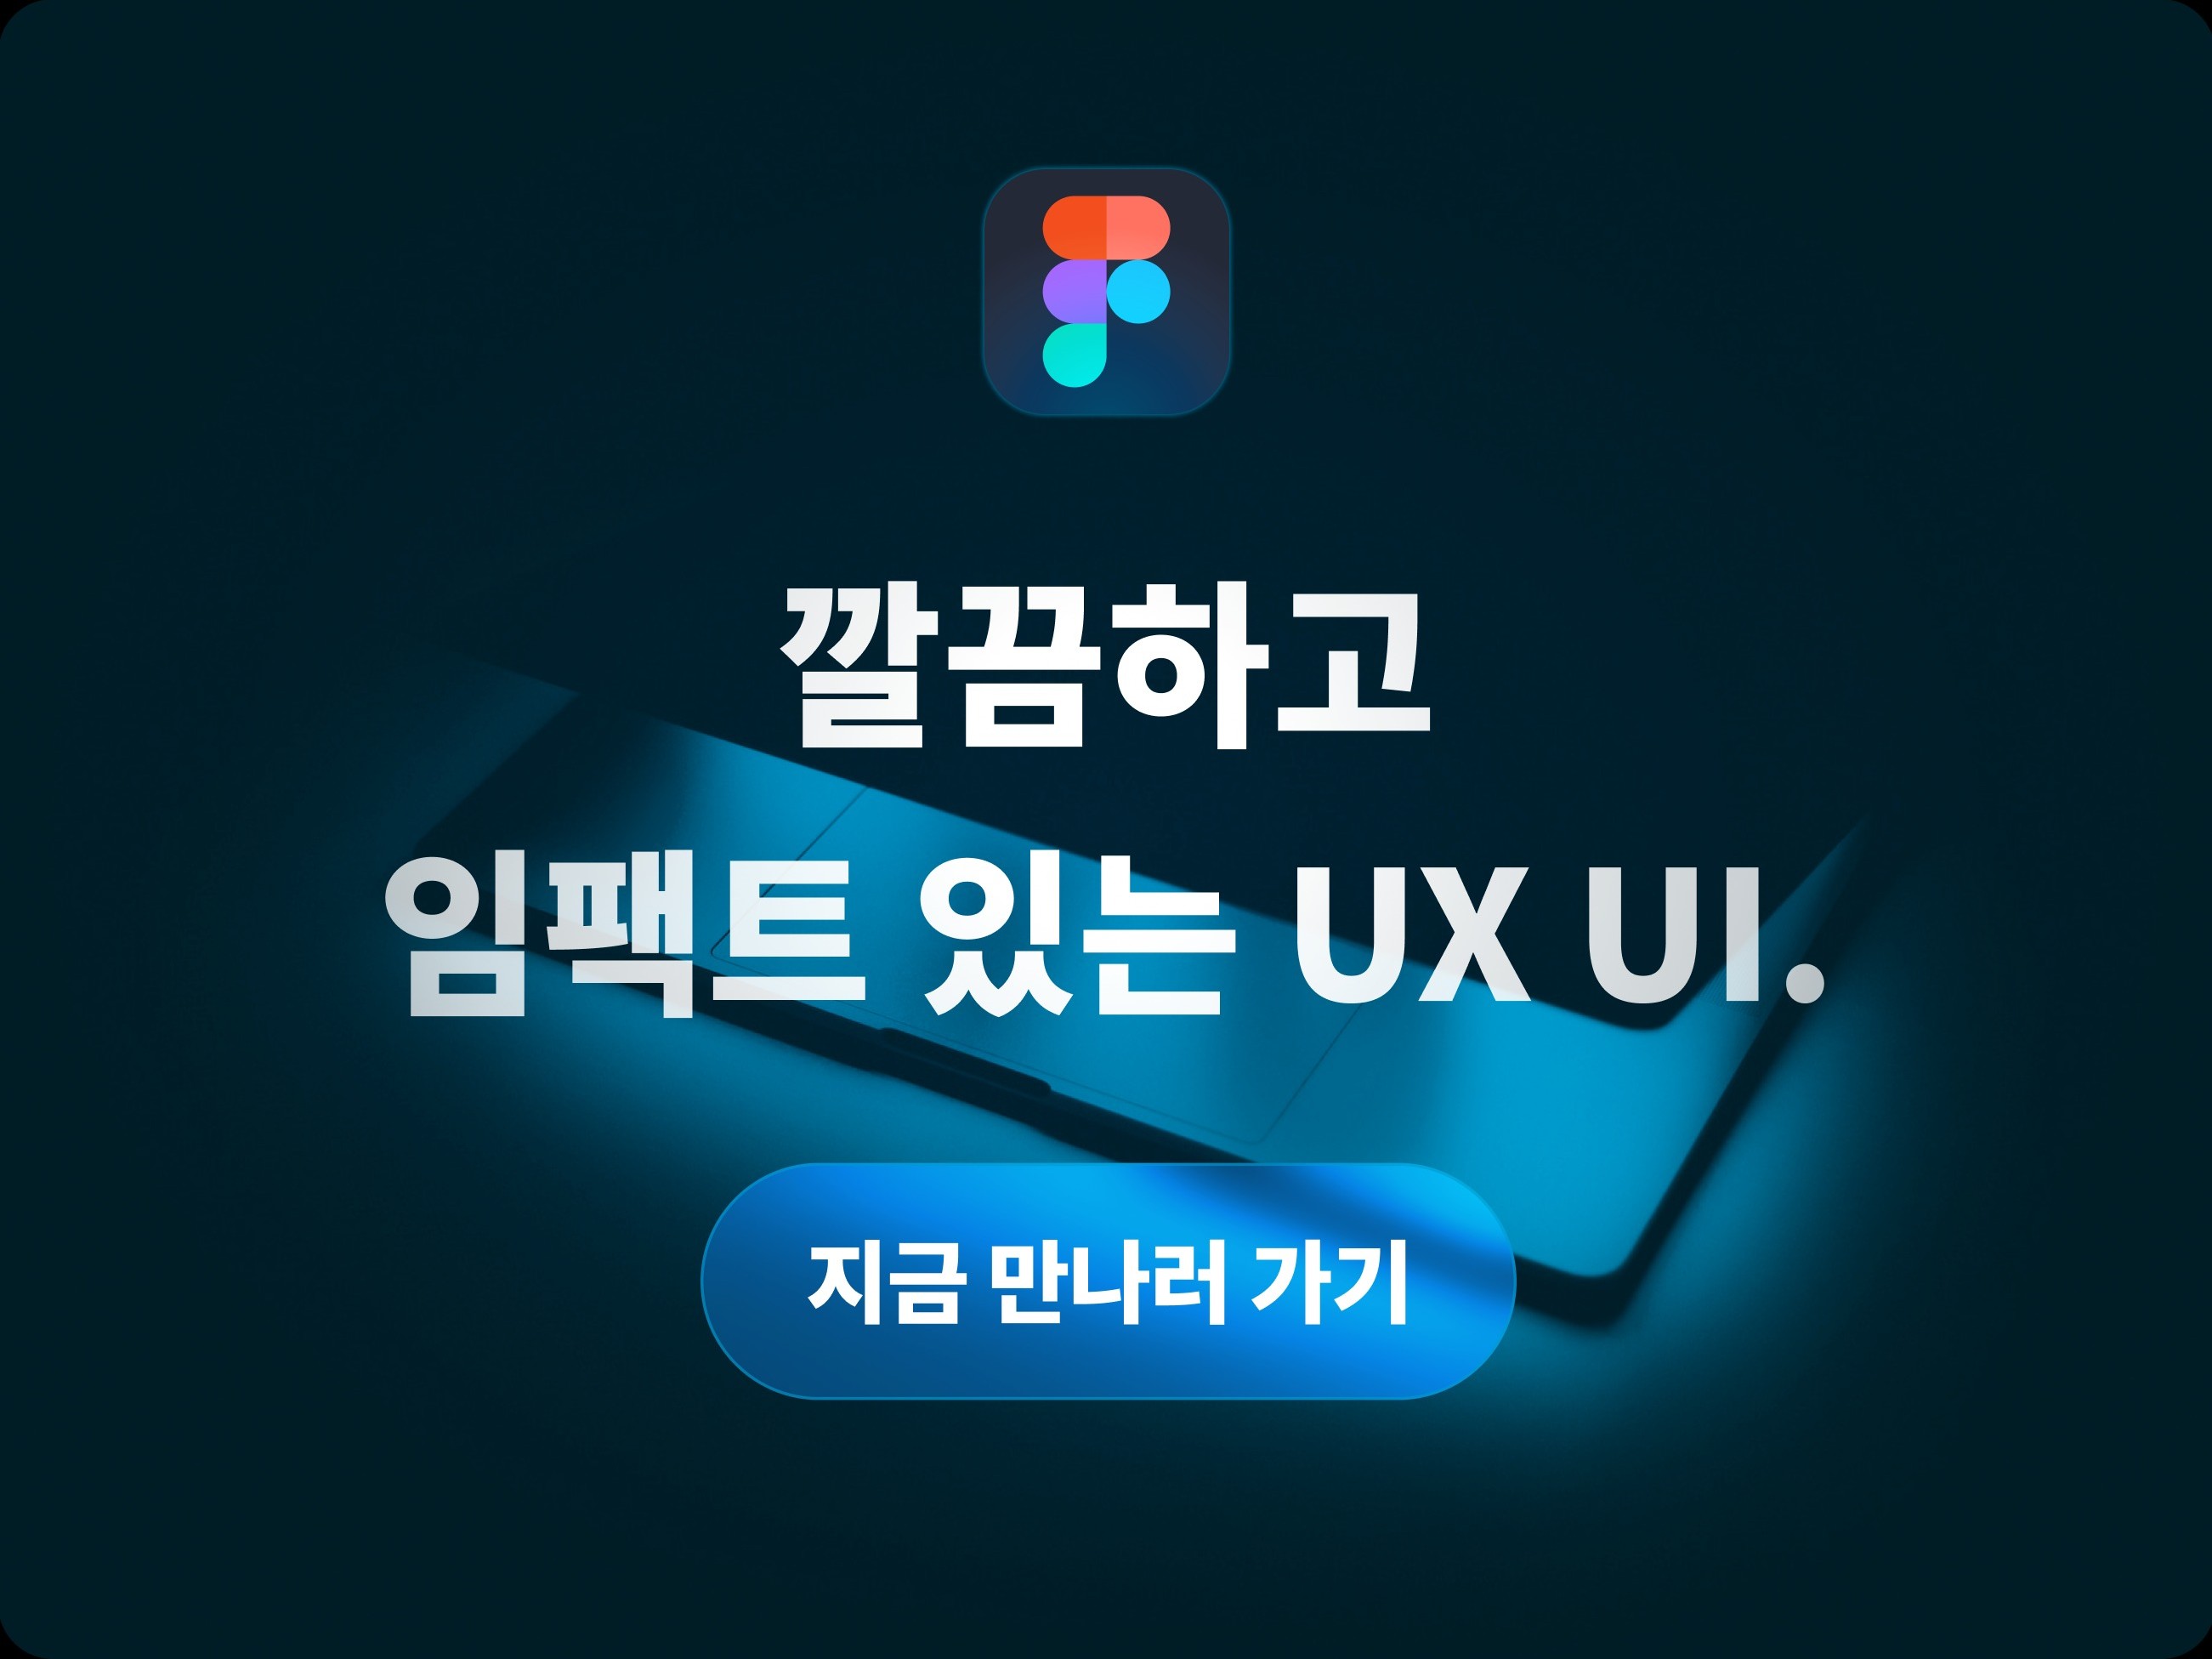 서울대학교 현직 디자이너의 UI/UX 디자인